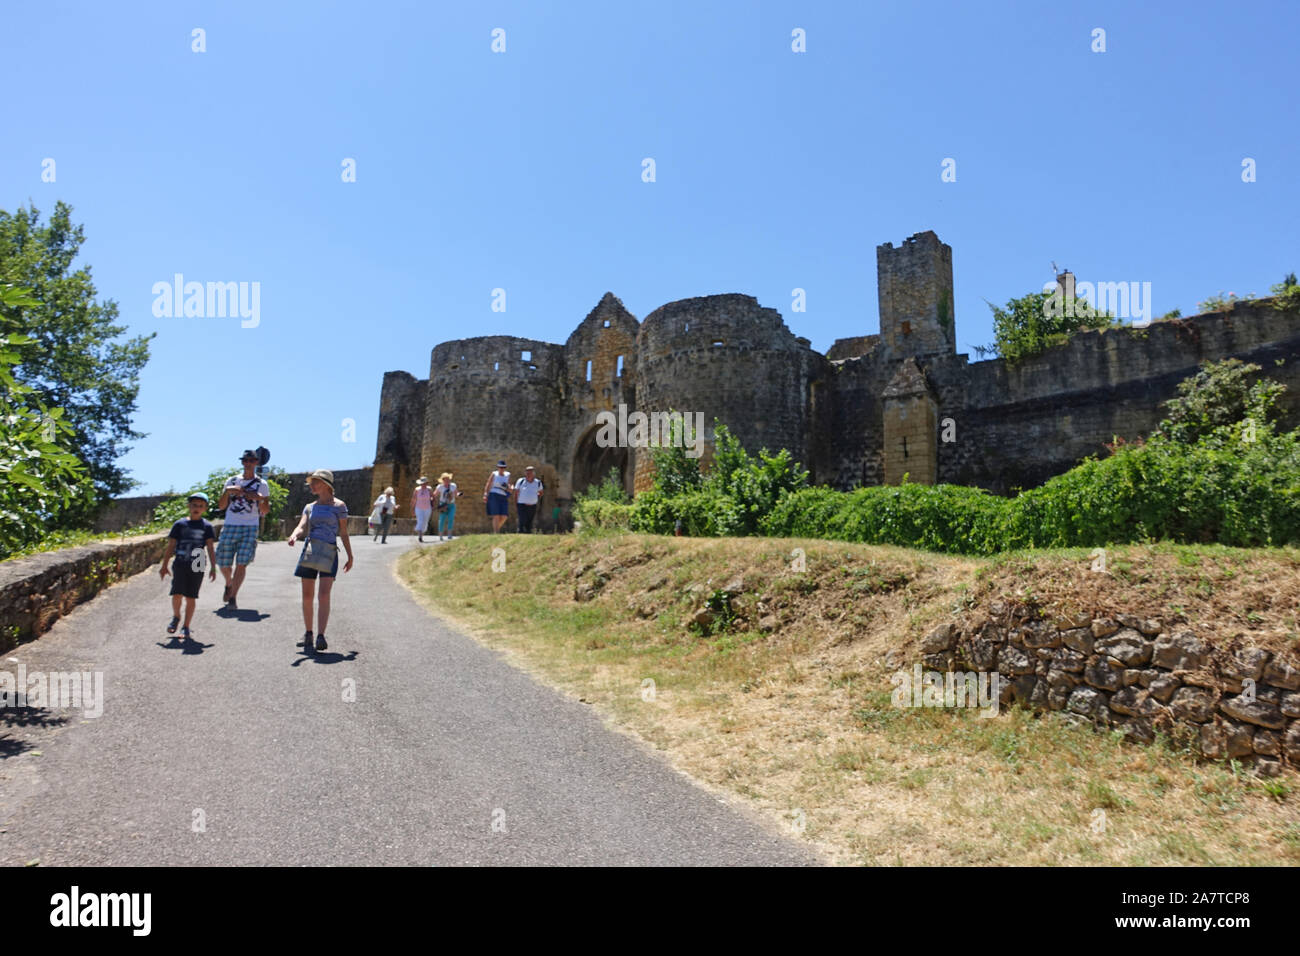 Domme, Frankreich vom 15. Juli 2019: Touristen auf dem Weg zum und vom Turm und Tor Porte des Tours mittelalterlichen Eingang der Stadt Domme in Frankreich Stockfoto